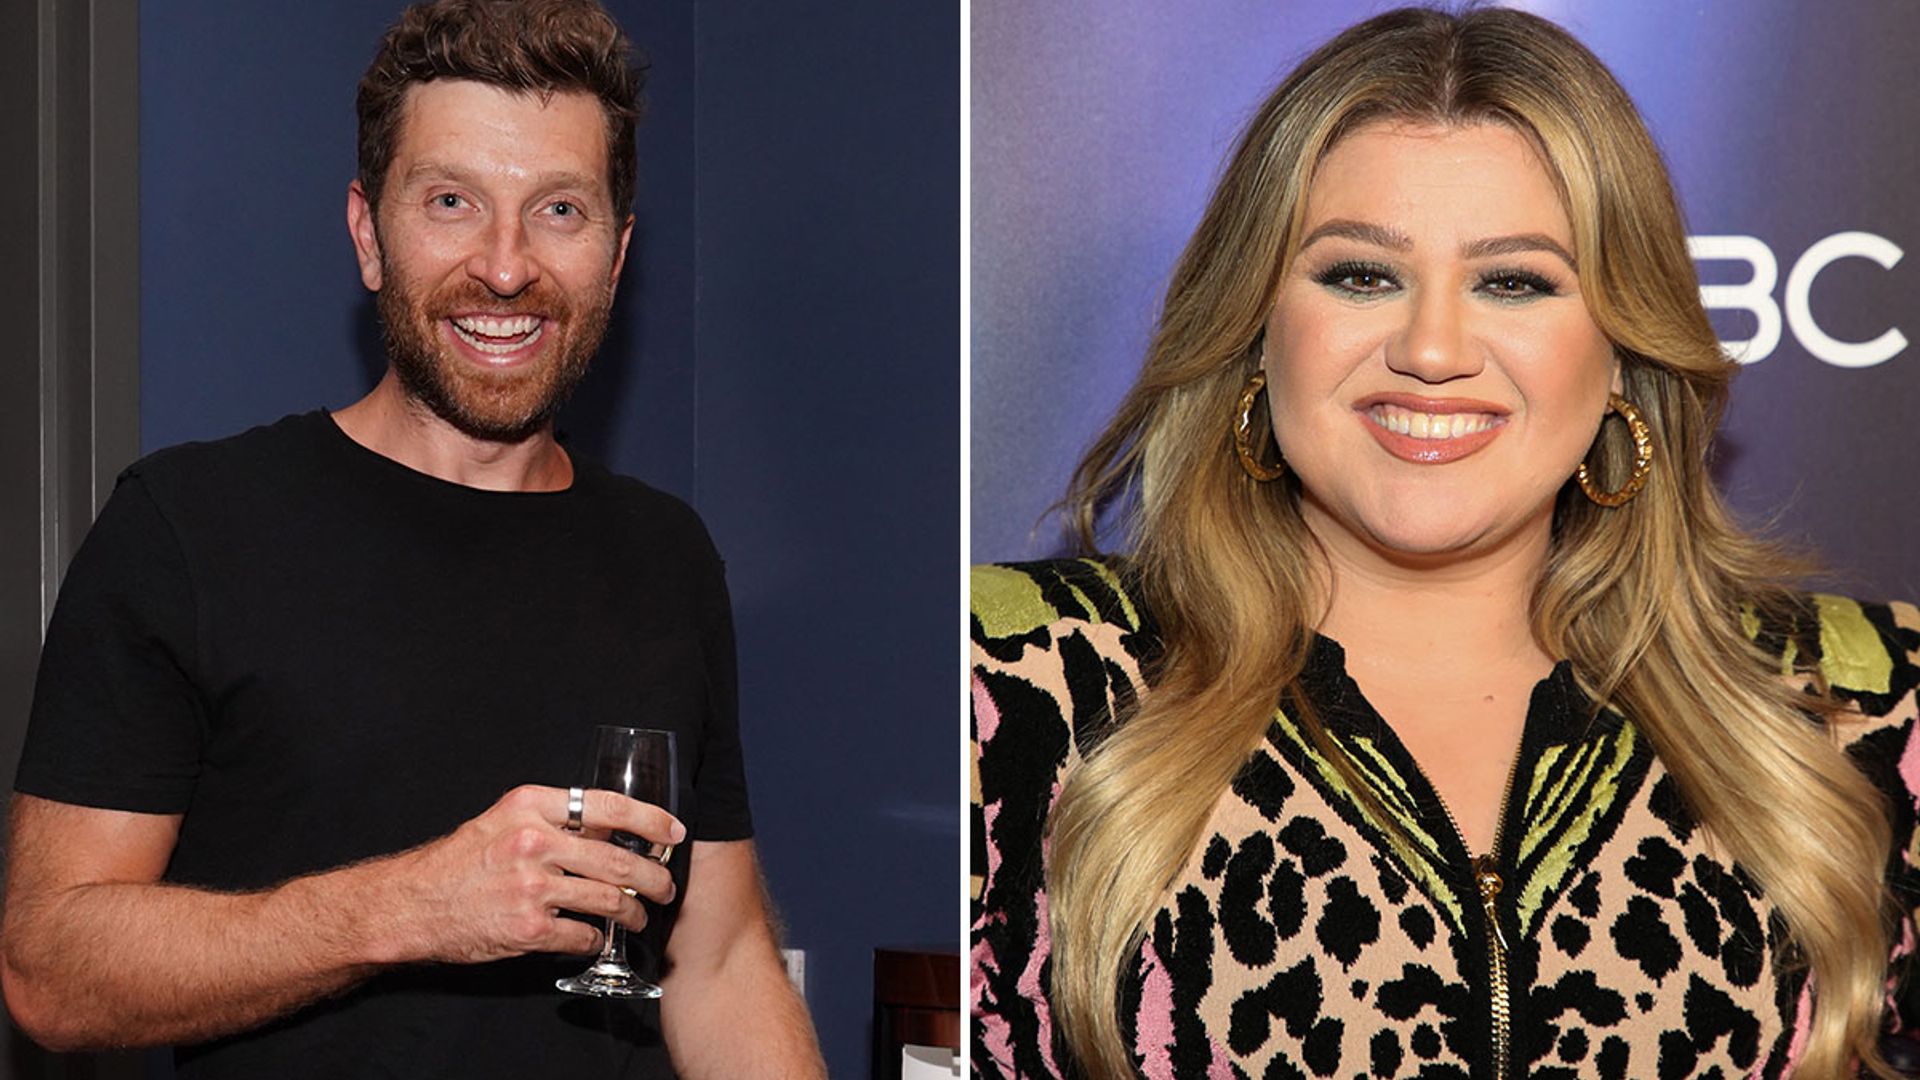 Exclusive: Country music star Brett Eldredge addresses Kelly Clarkson dating rumors